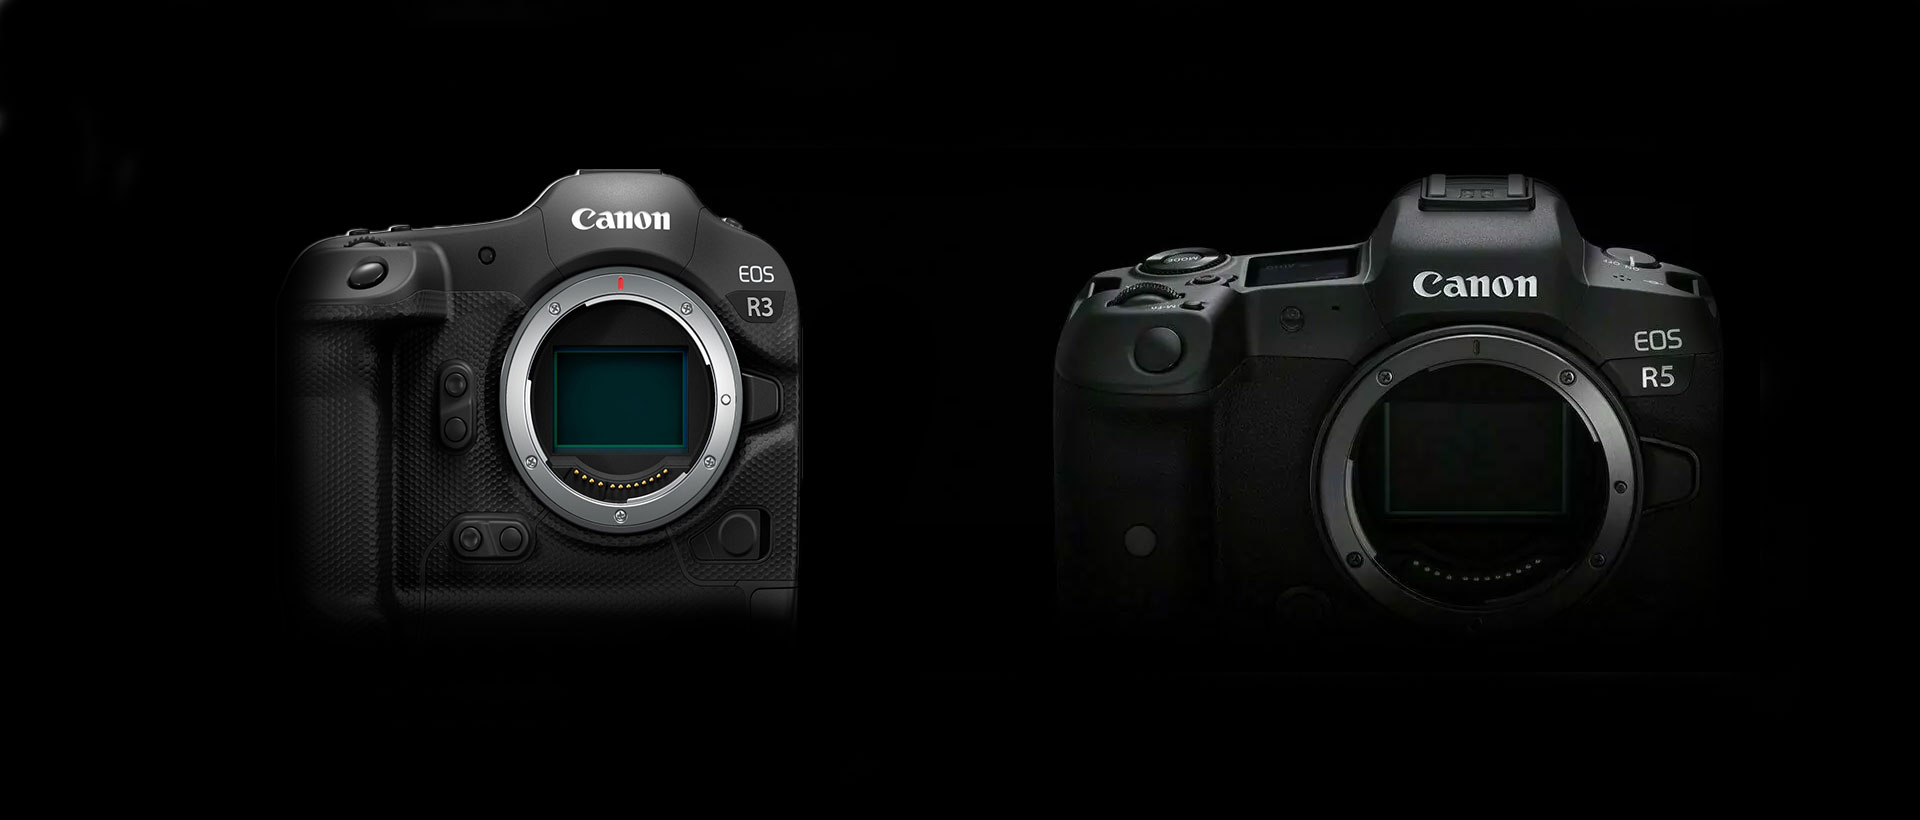 Preview Image: Das neue Firmware-Update von Canon für die EOS R3 / EOS R5